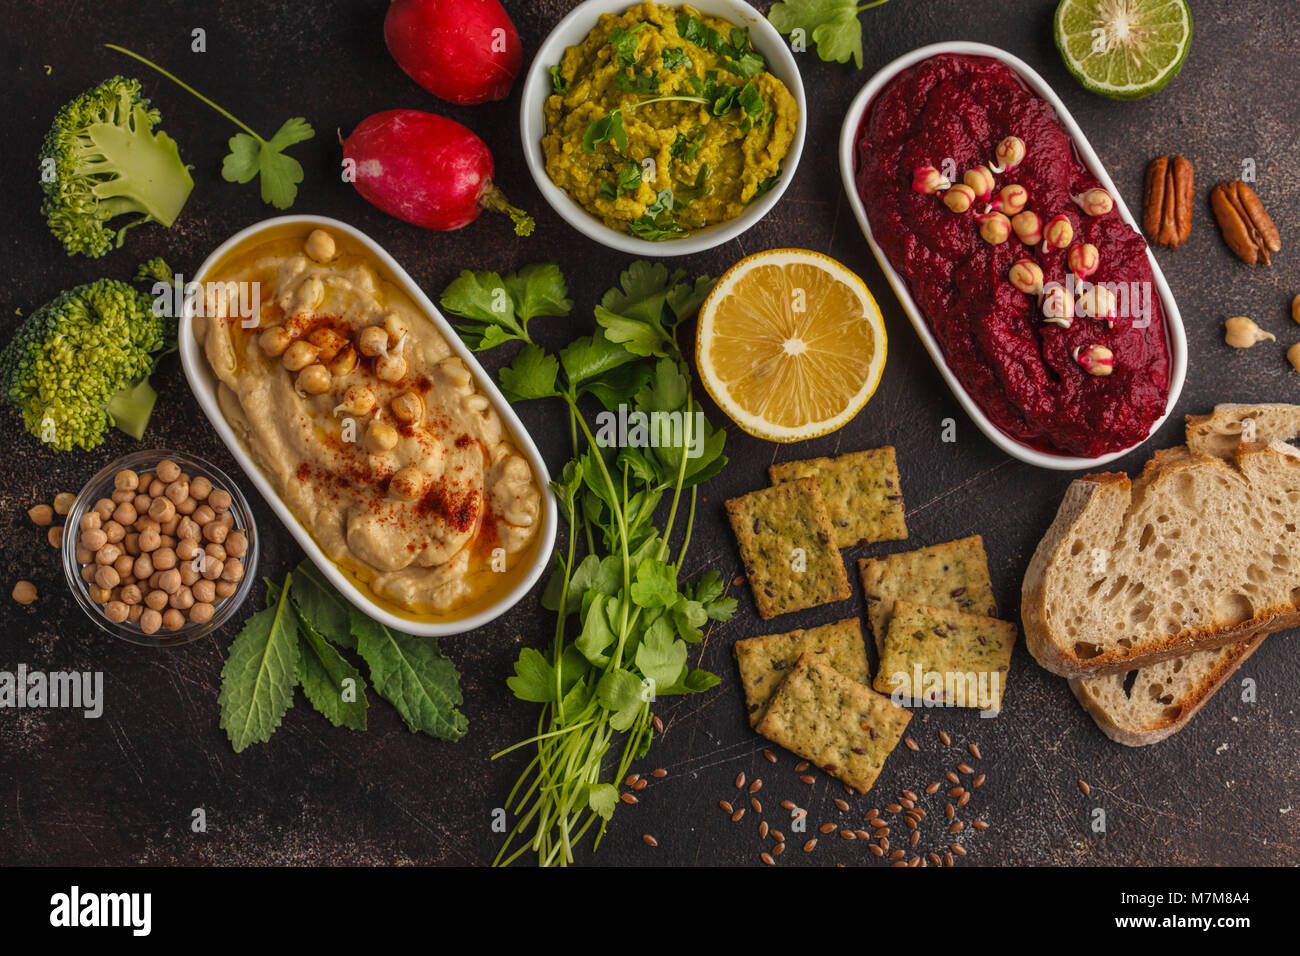 Vegan food background. Vegetarian snacks: hummus, beetroot hummus, green peas dip, vegetables, tofu. Top view, dark background, copy space. Stock Photo